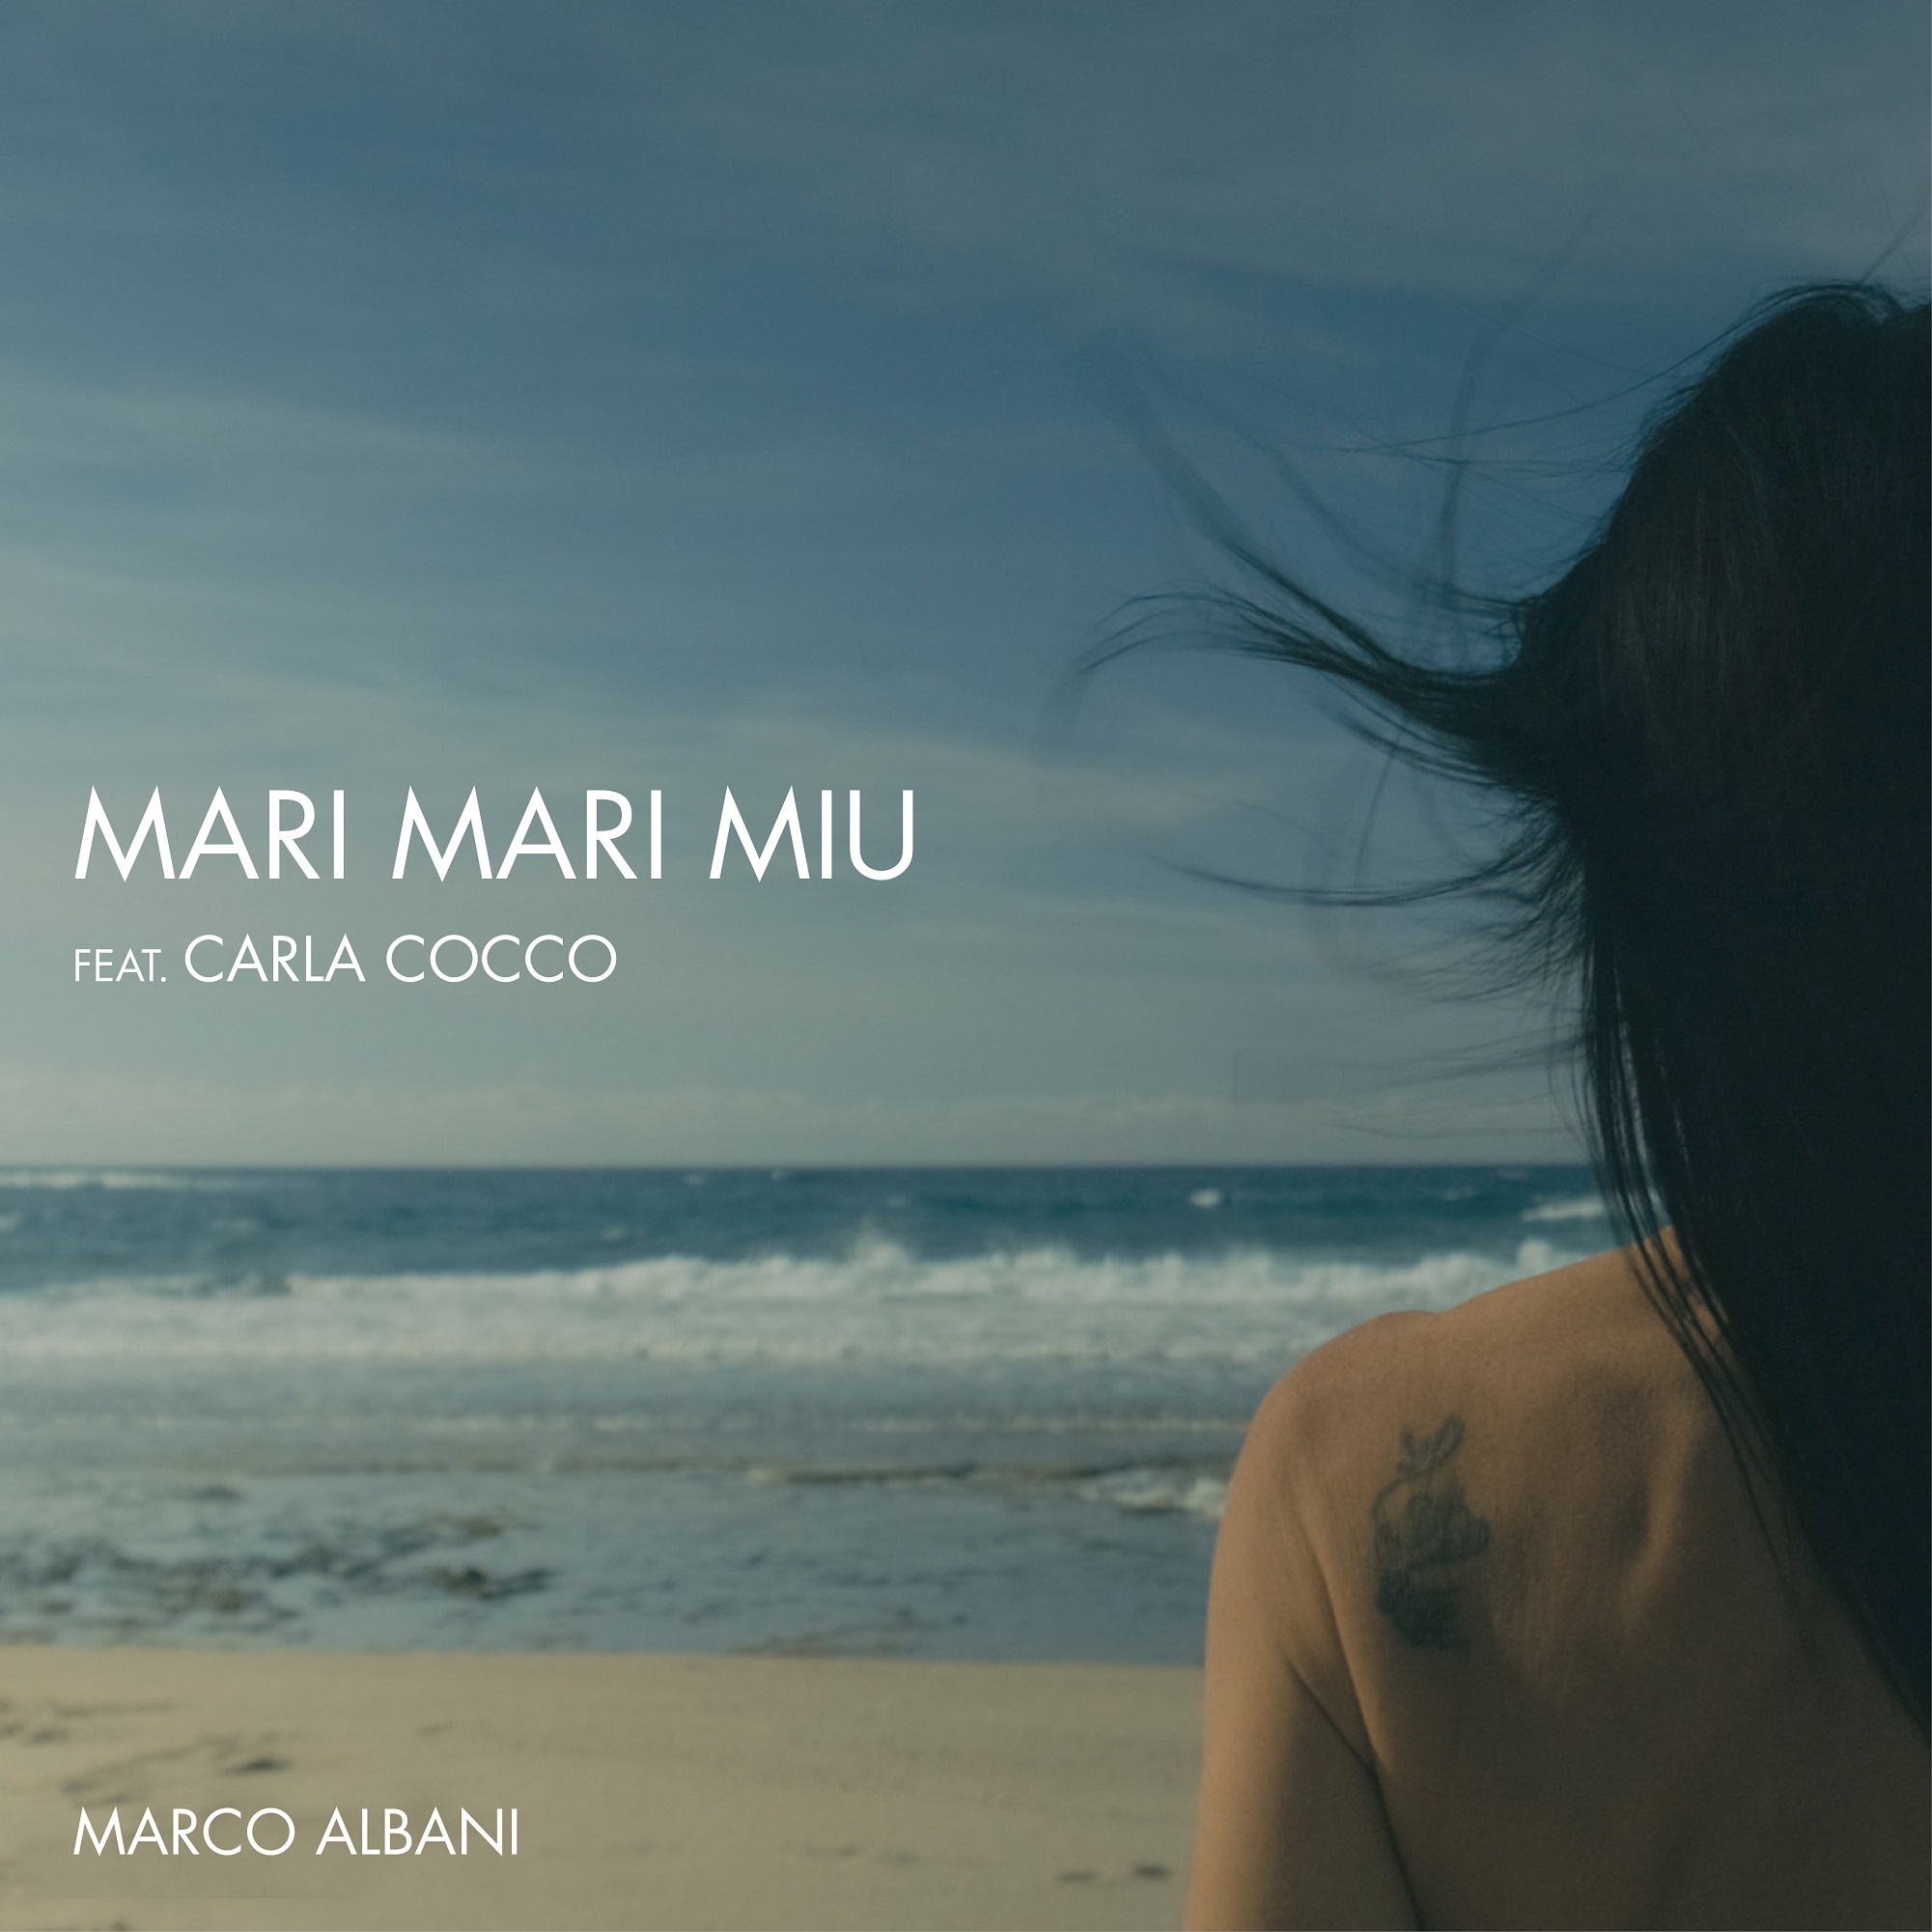 Arriva in radio, su Youtube e in digitale il nuovo singolo di MARCO ALBANI “MARI MARI MIU” feat. CARLA COCCO